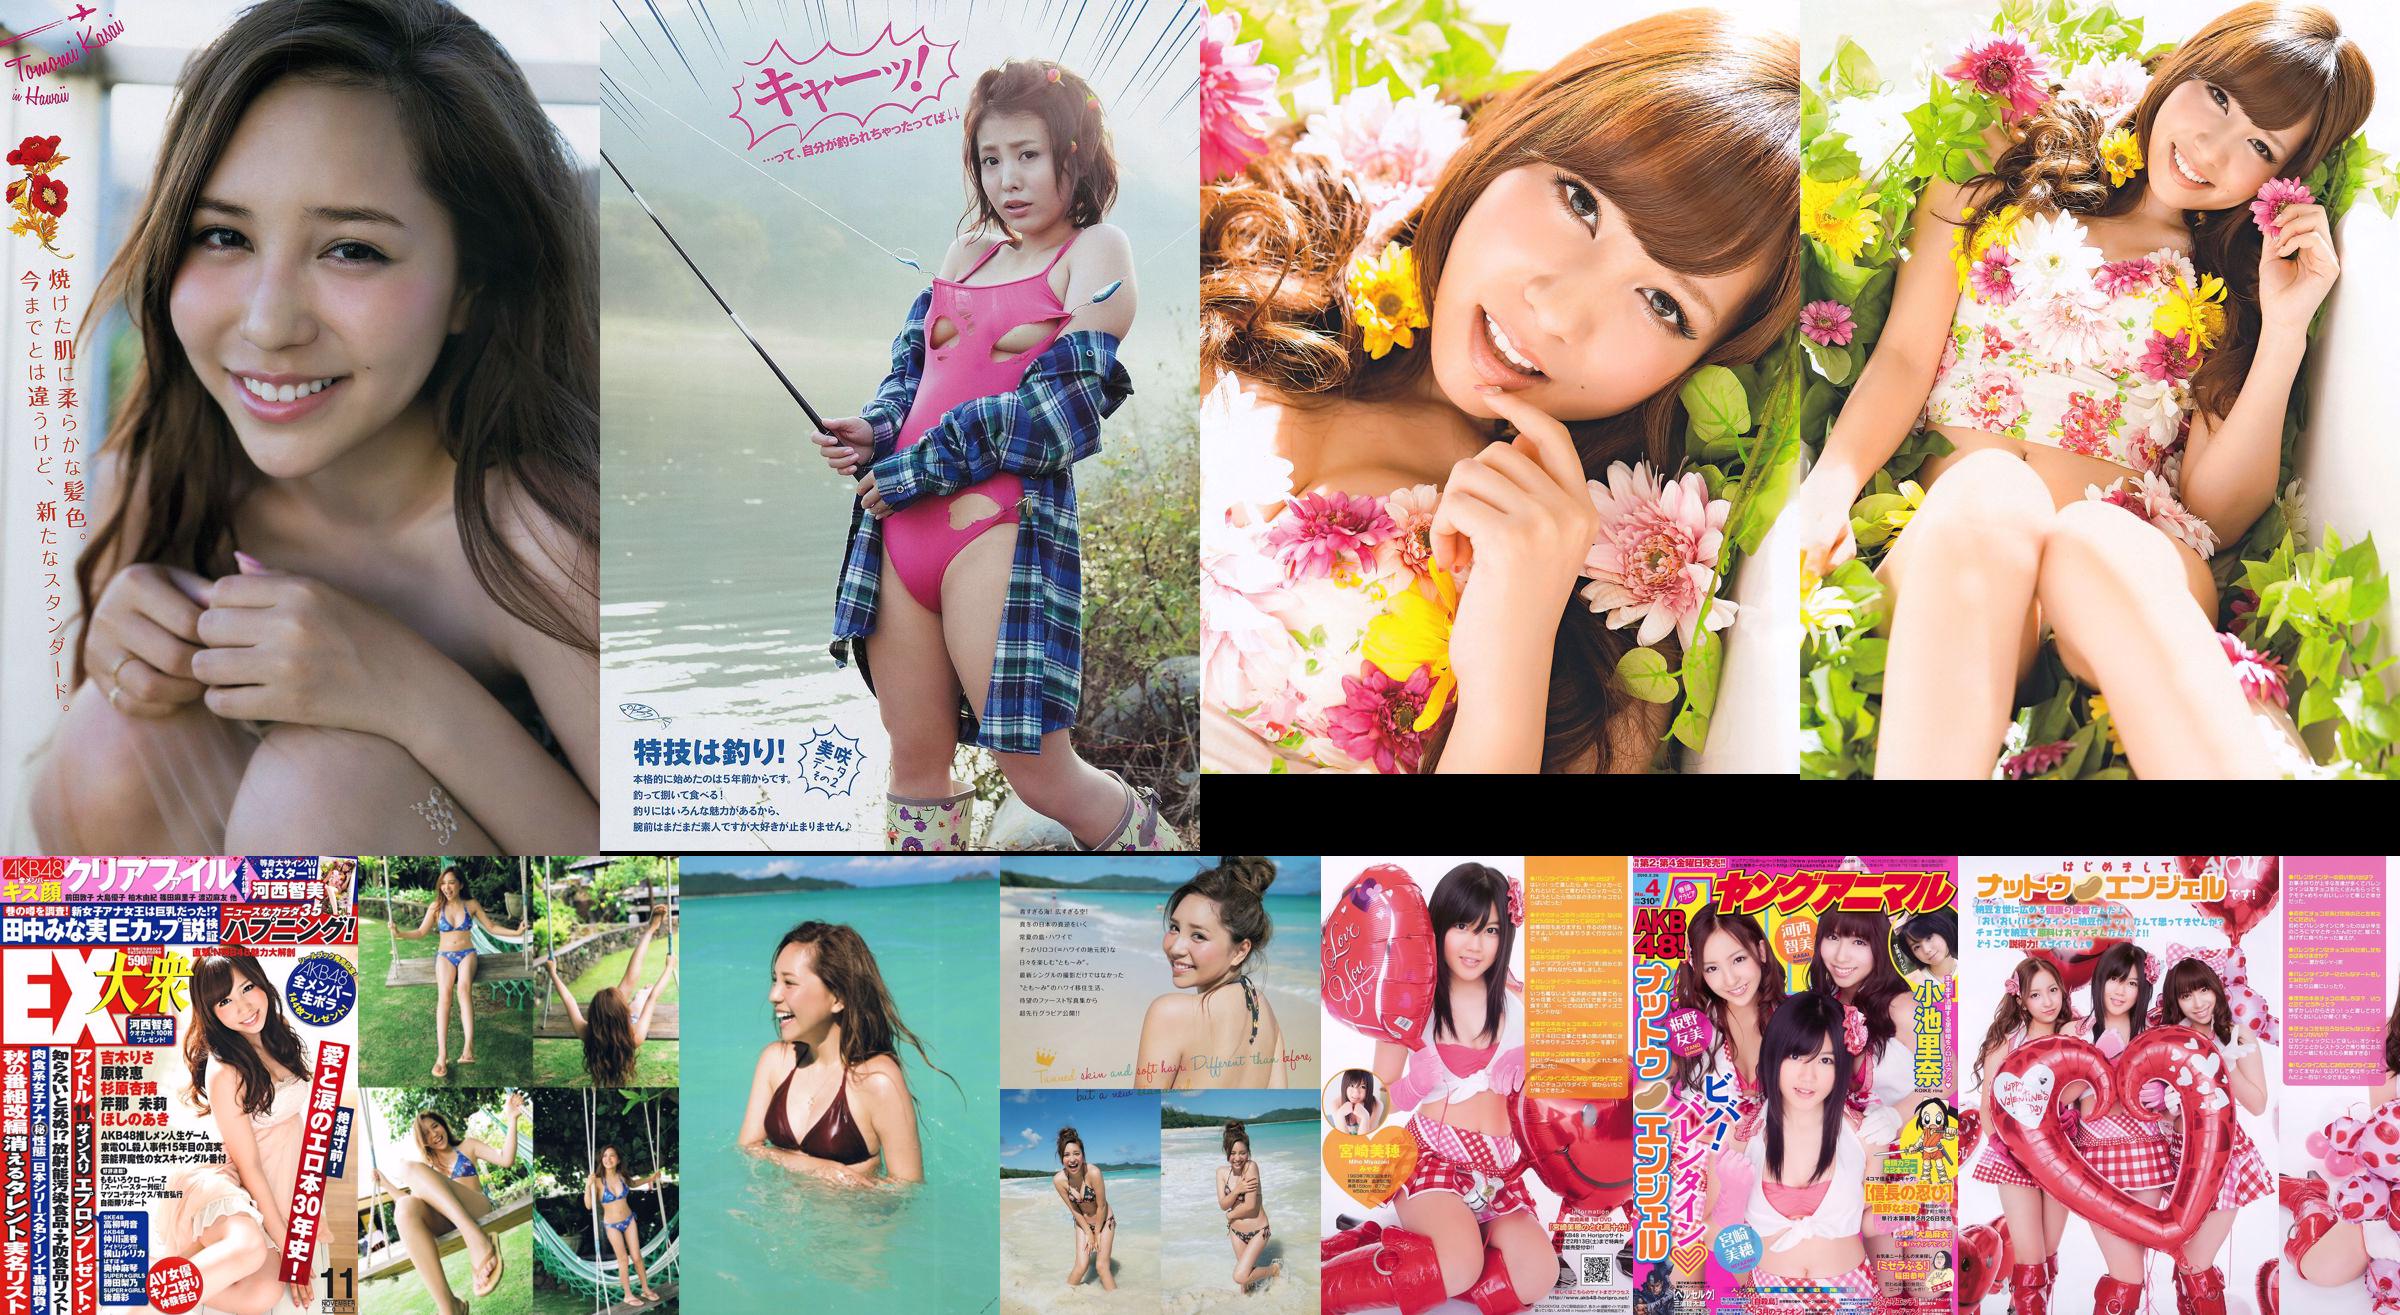 [EX Taishu] Tomomi Kasai Risa Yoshiki Mikie Hara NMB48 Anri Sugihara Aki Hoshino Serina 2011 No.11 Ảnh No.d8d709 Trang 1